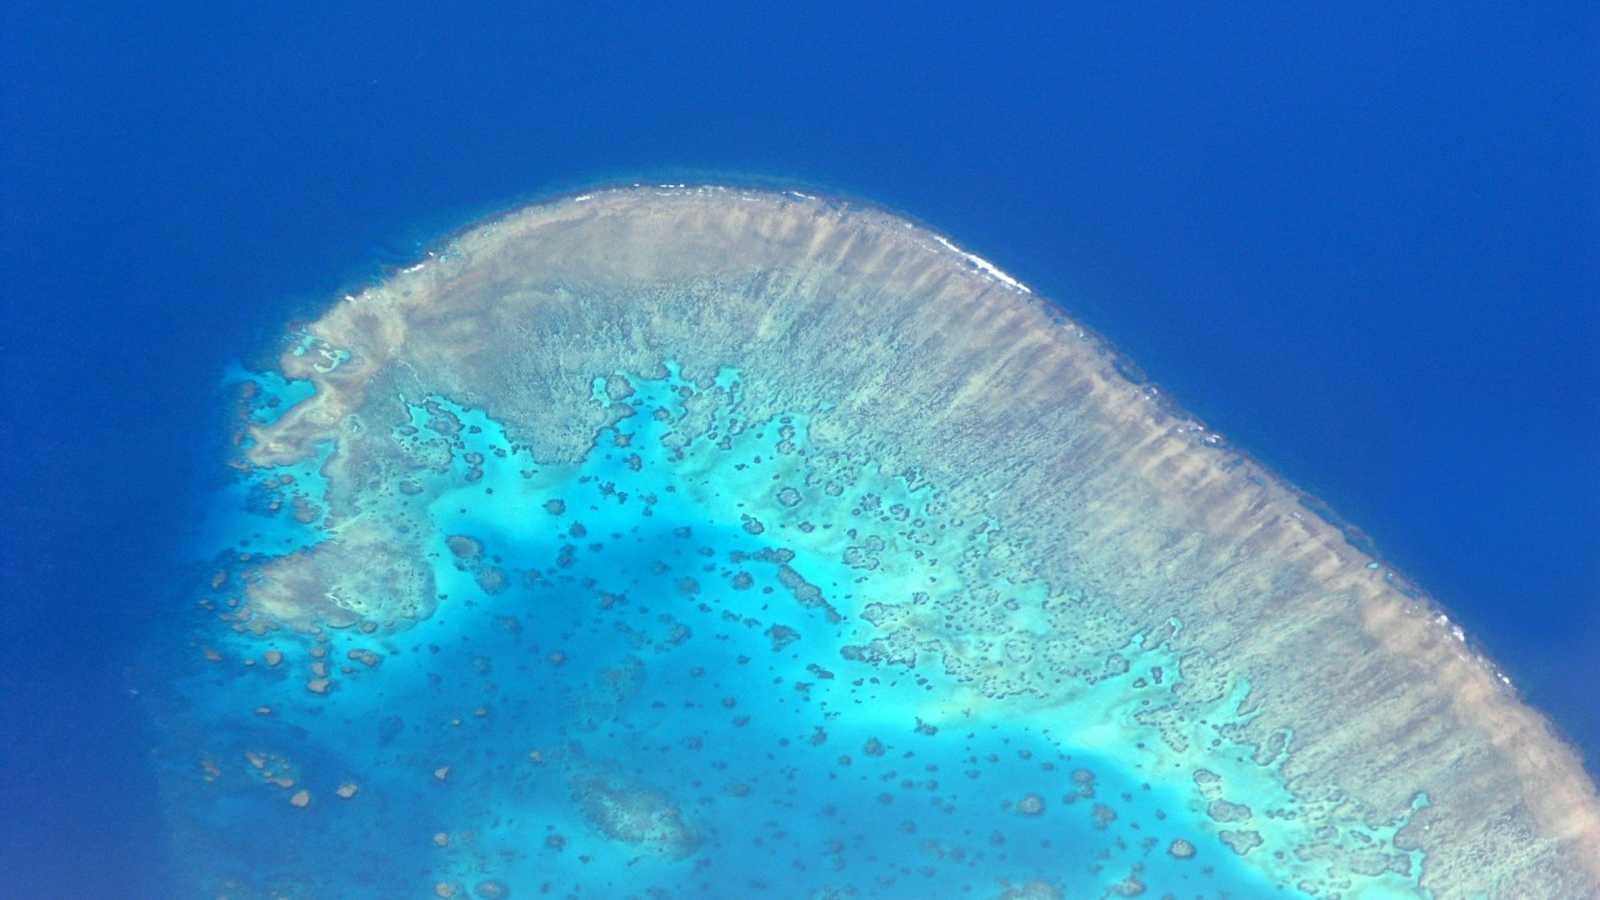 大堡礁 Great Barrier Reef 第3集